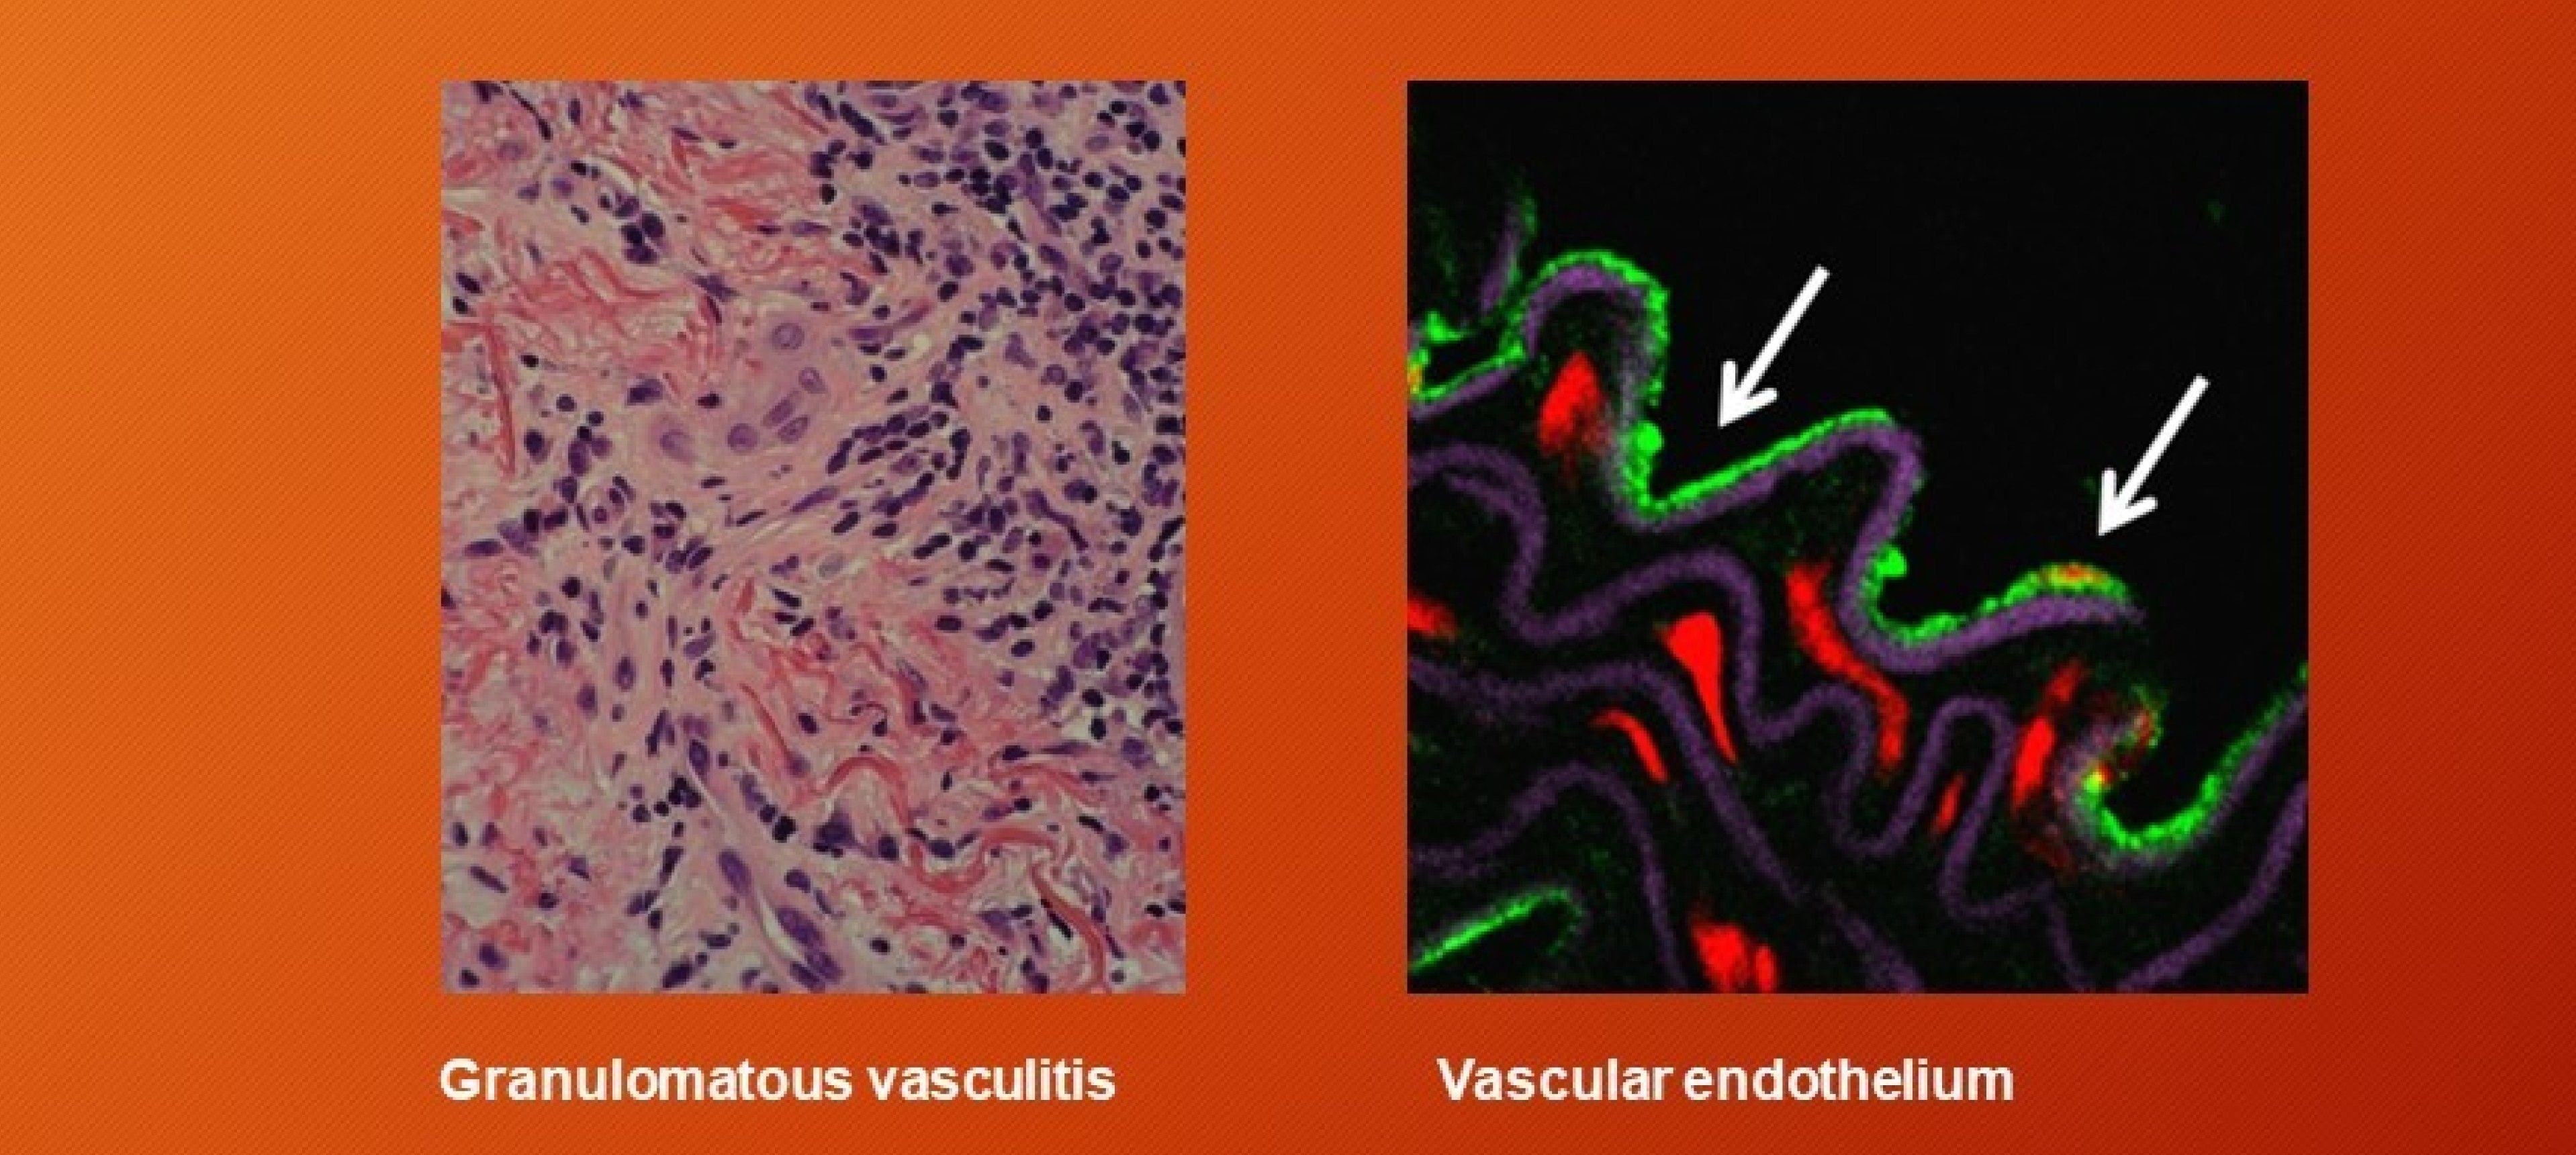 Granulomatous vasculitis